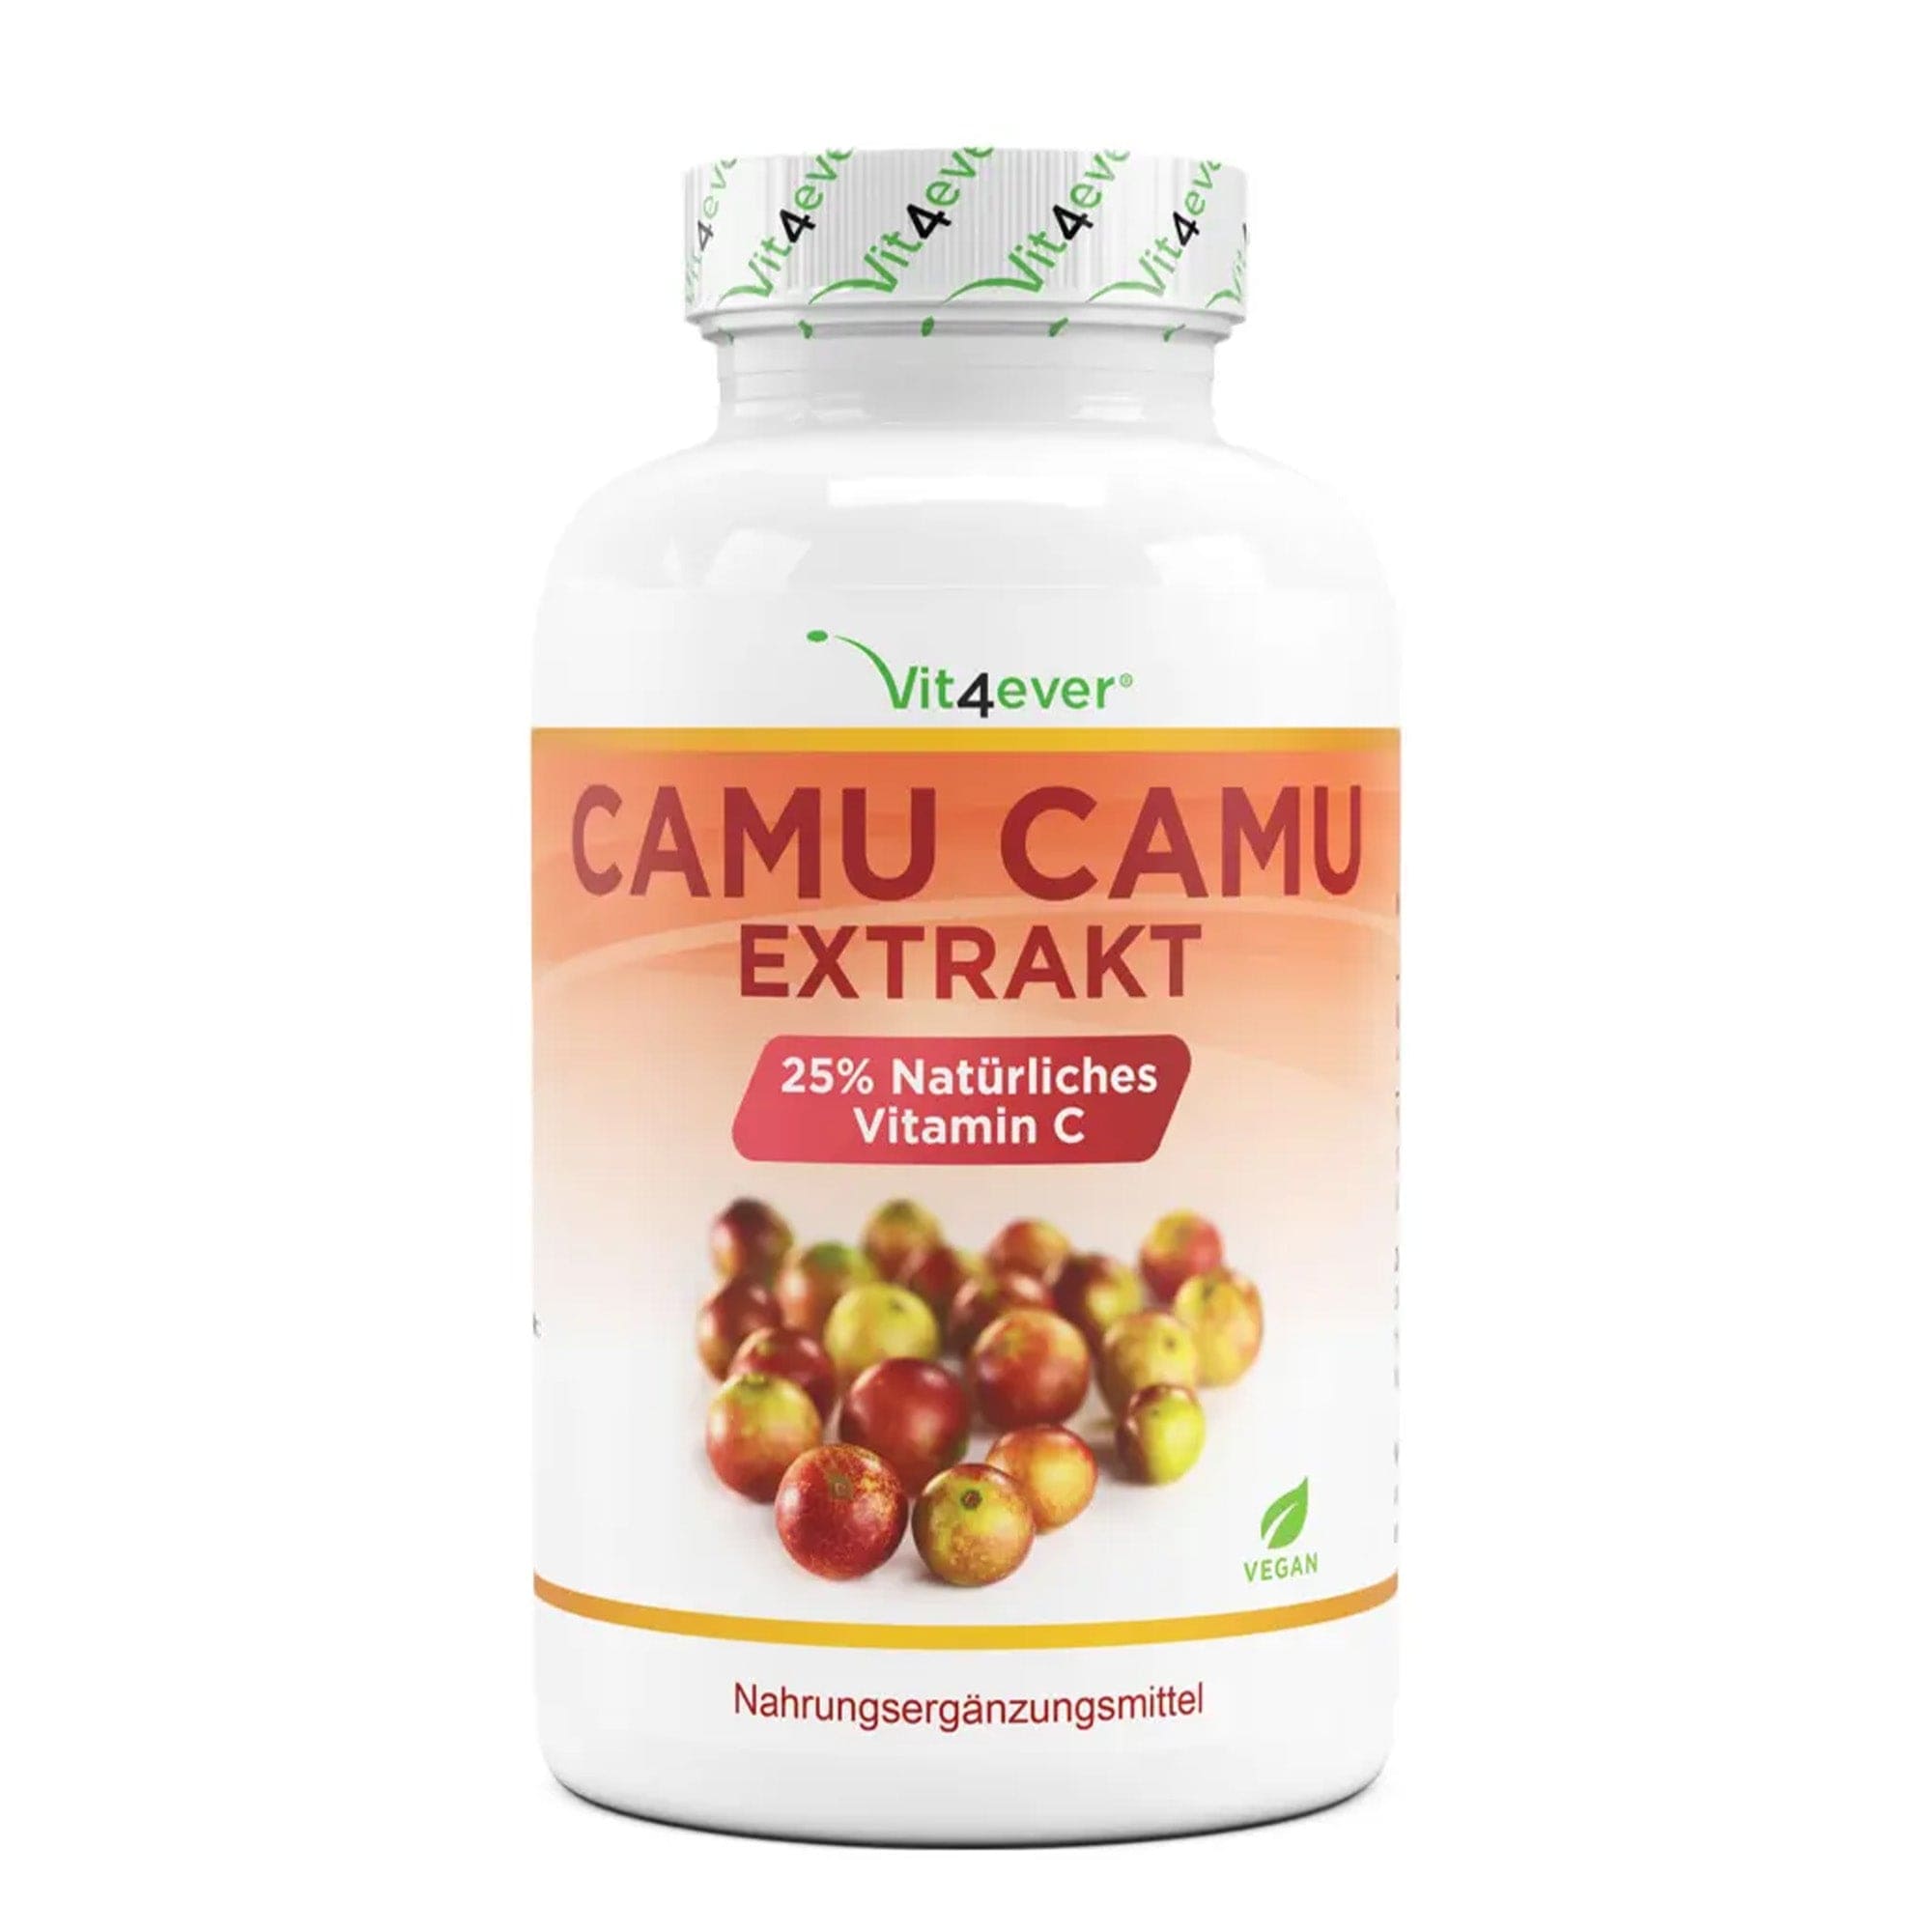 Camu camu extract 25% natuurlijke vitamine C